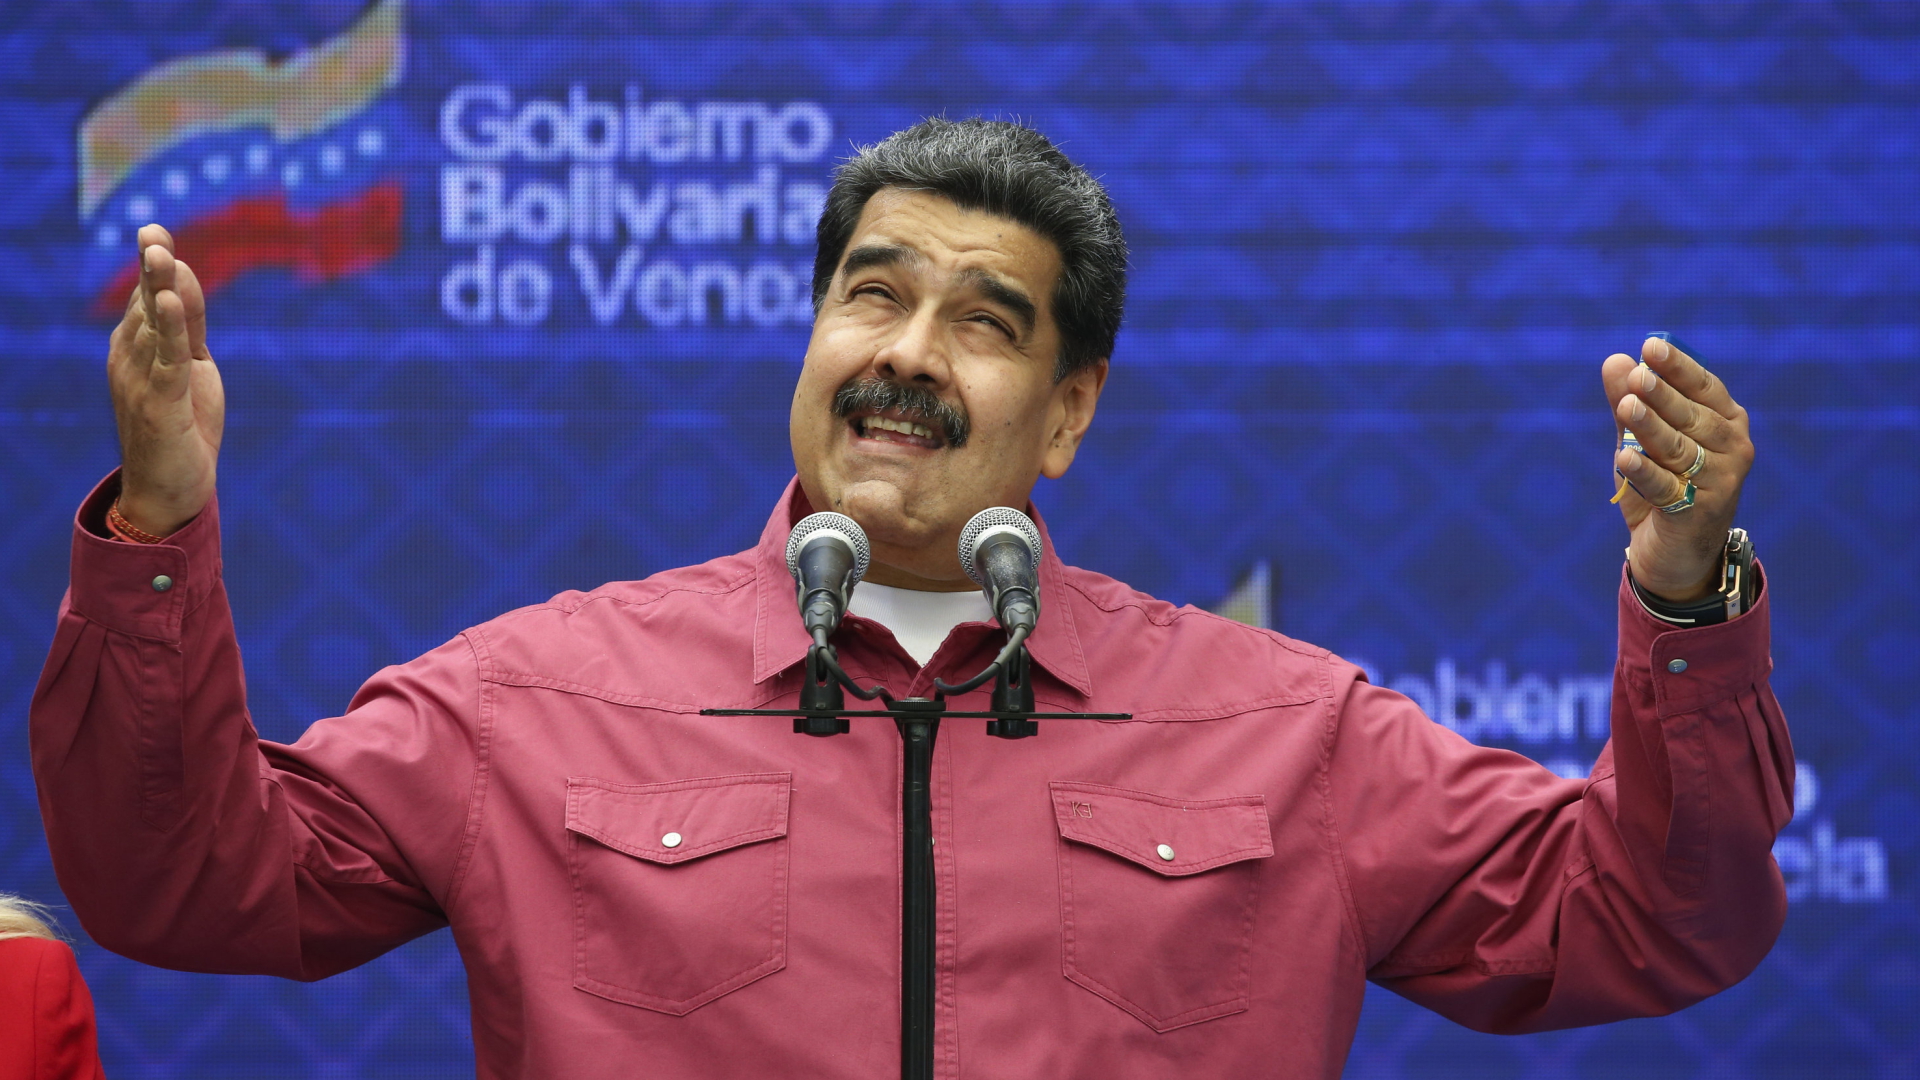 Staatschef Nicolás Maduro spricht zu seinen Anhängern | AP